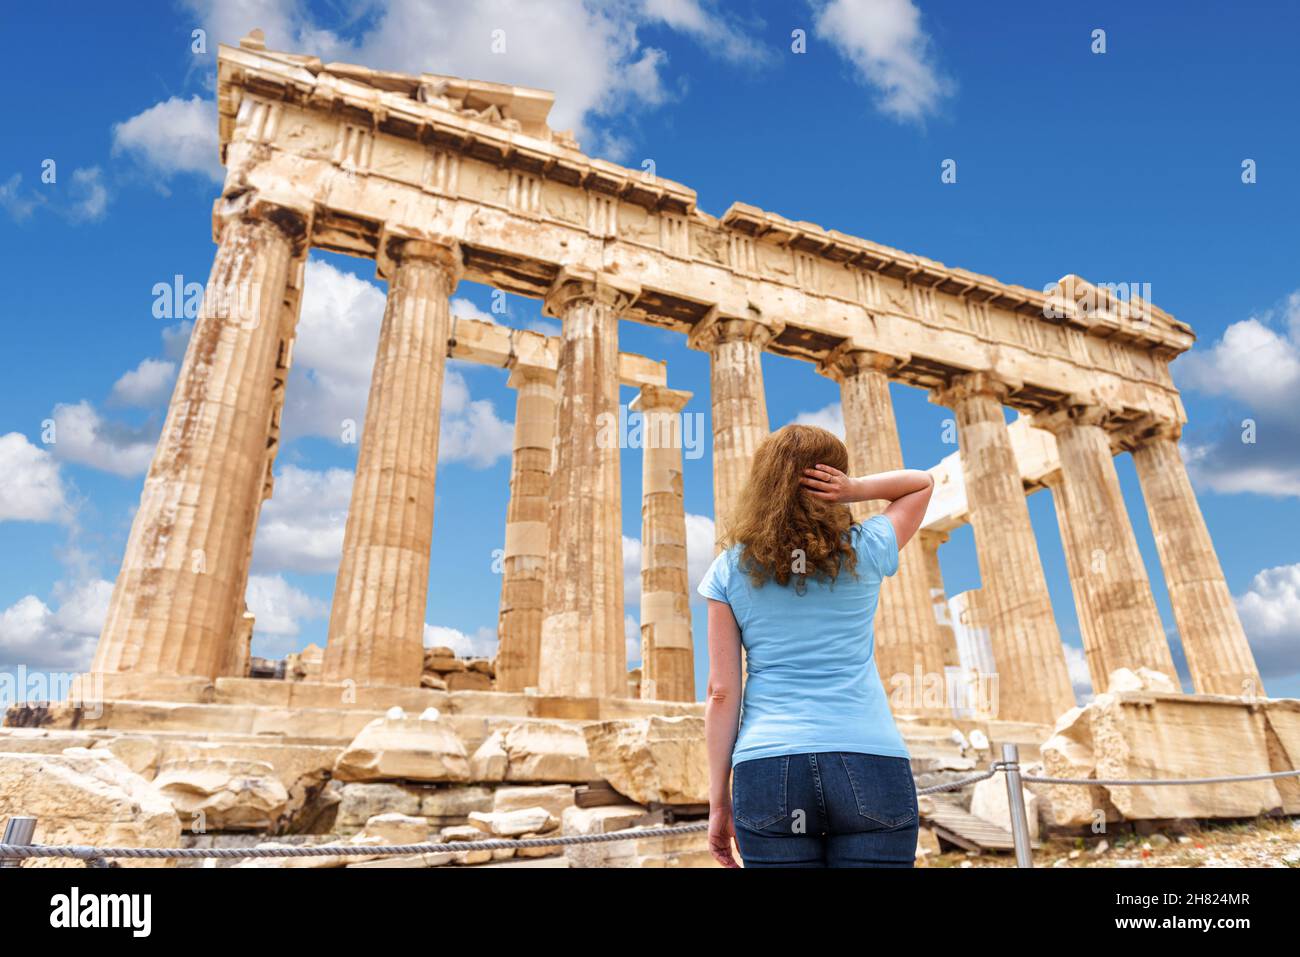 Person schaut auf den Parthenon-Tempel auf der Akropolis, Athen, Griechenland, Europa. Dieser Ort ist die Top-Touristenattraktion von Athen. Junge Frau besucht den Landm von Athen Stockfoto